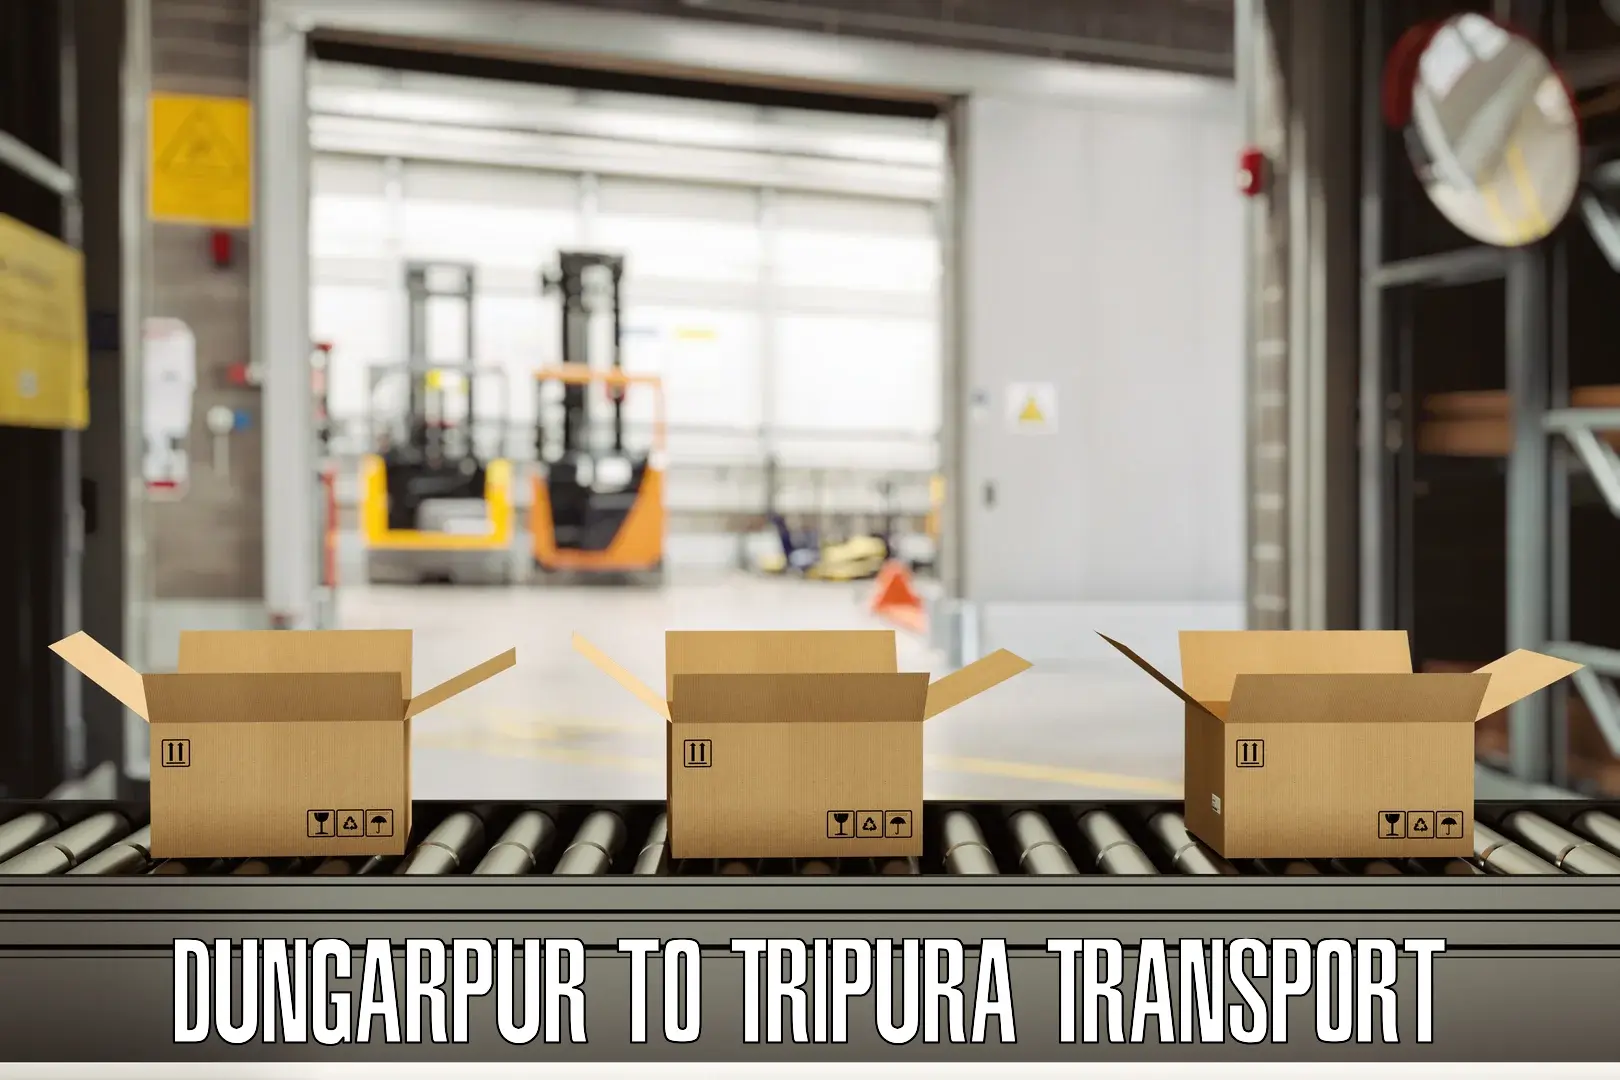 Cargo transport services Dungarpur to Udaipur Tripura